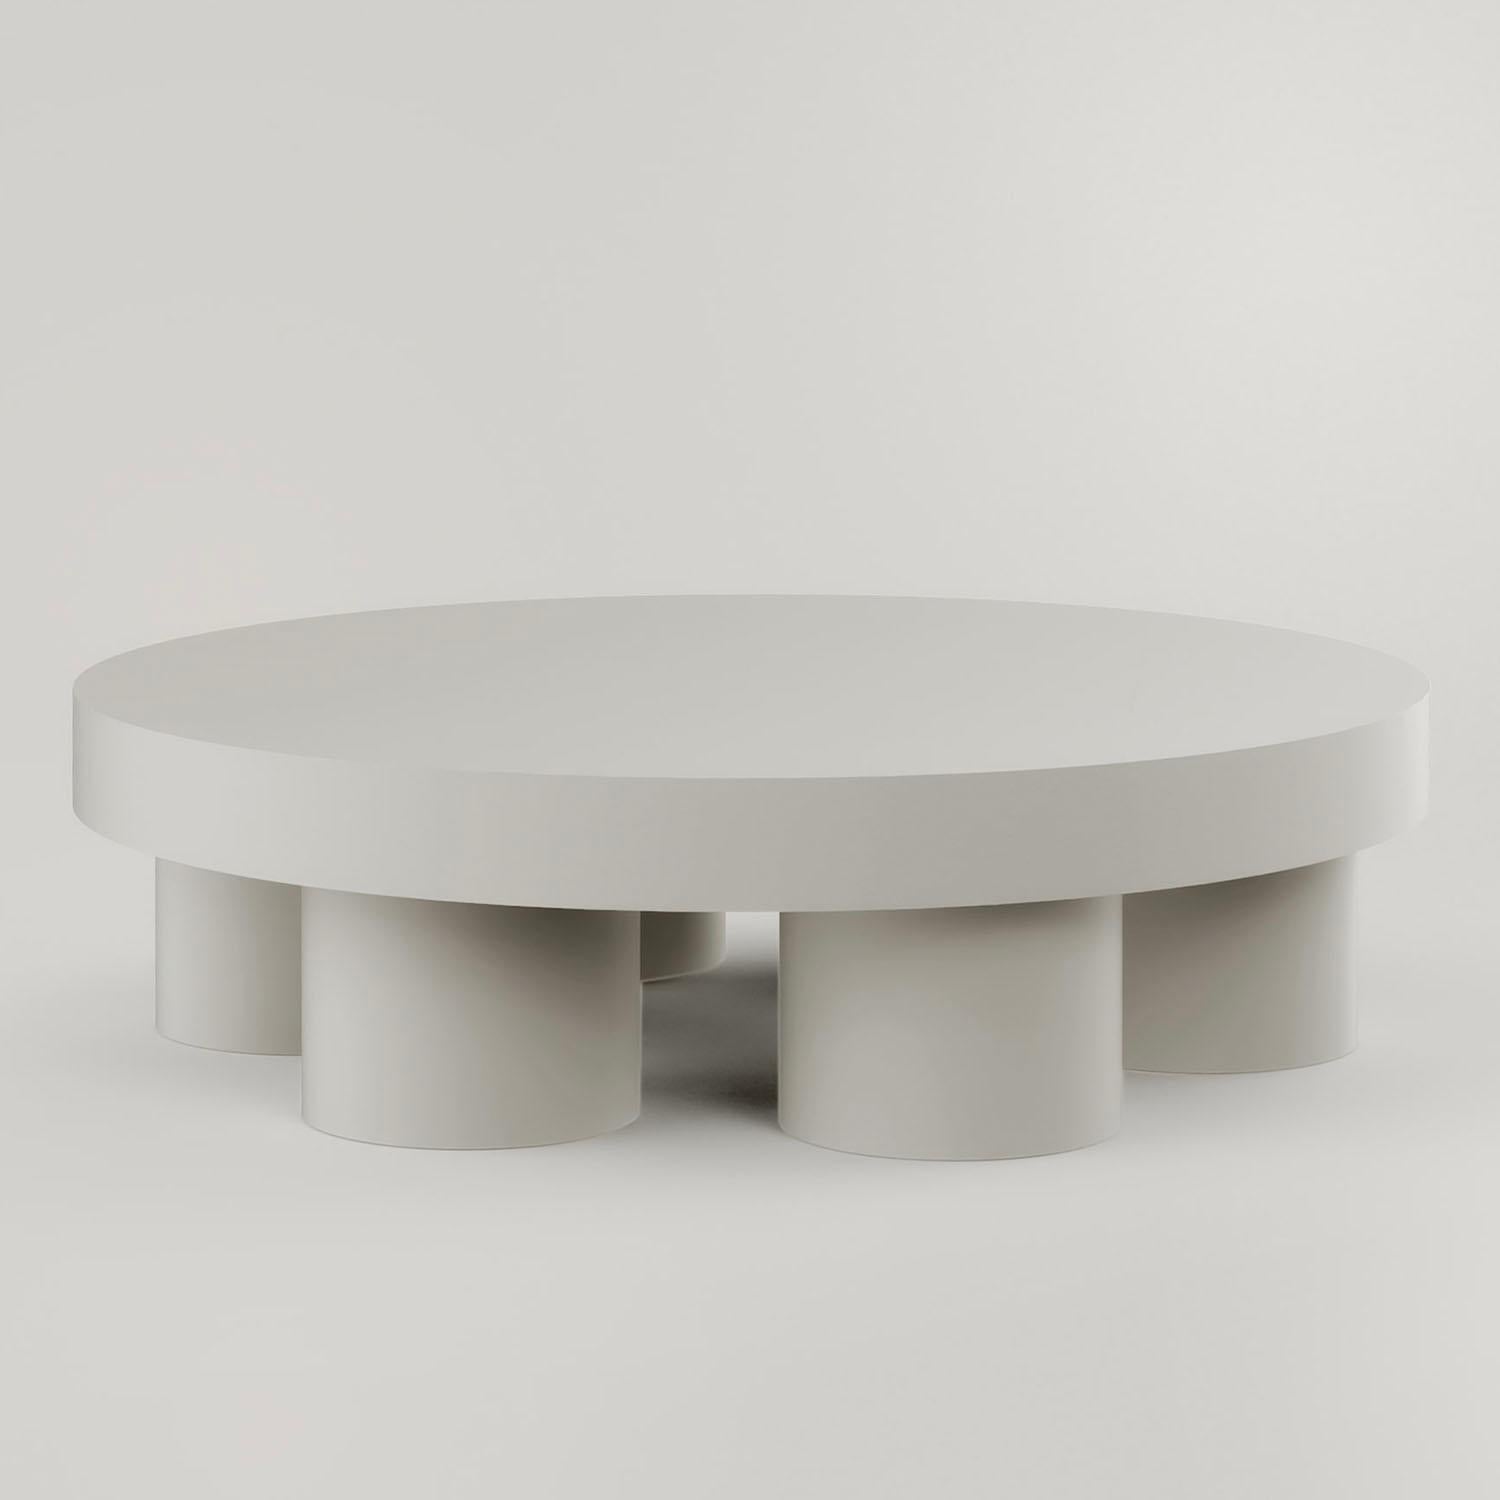 Zeitgenössischer Couchtisch aus Jesmonit - Pilotis Low Table by Malgorzata Bany.

Pilotis Low Table, ein multifunktionales, aus Jesmonit gefertigtes Einzelstück. Der Tisch ist die jüngste Ergänzung der Pilotis